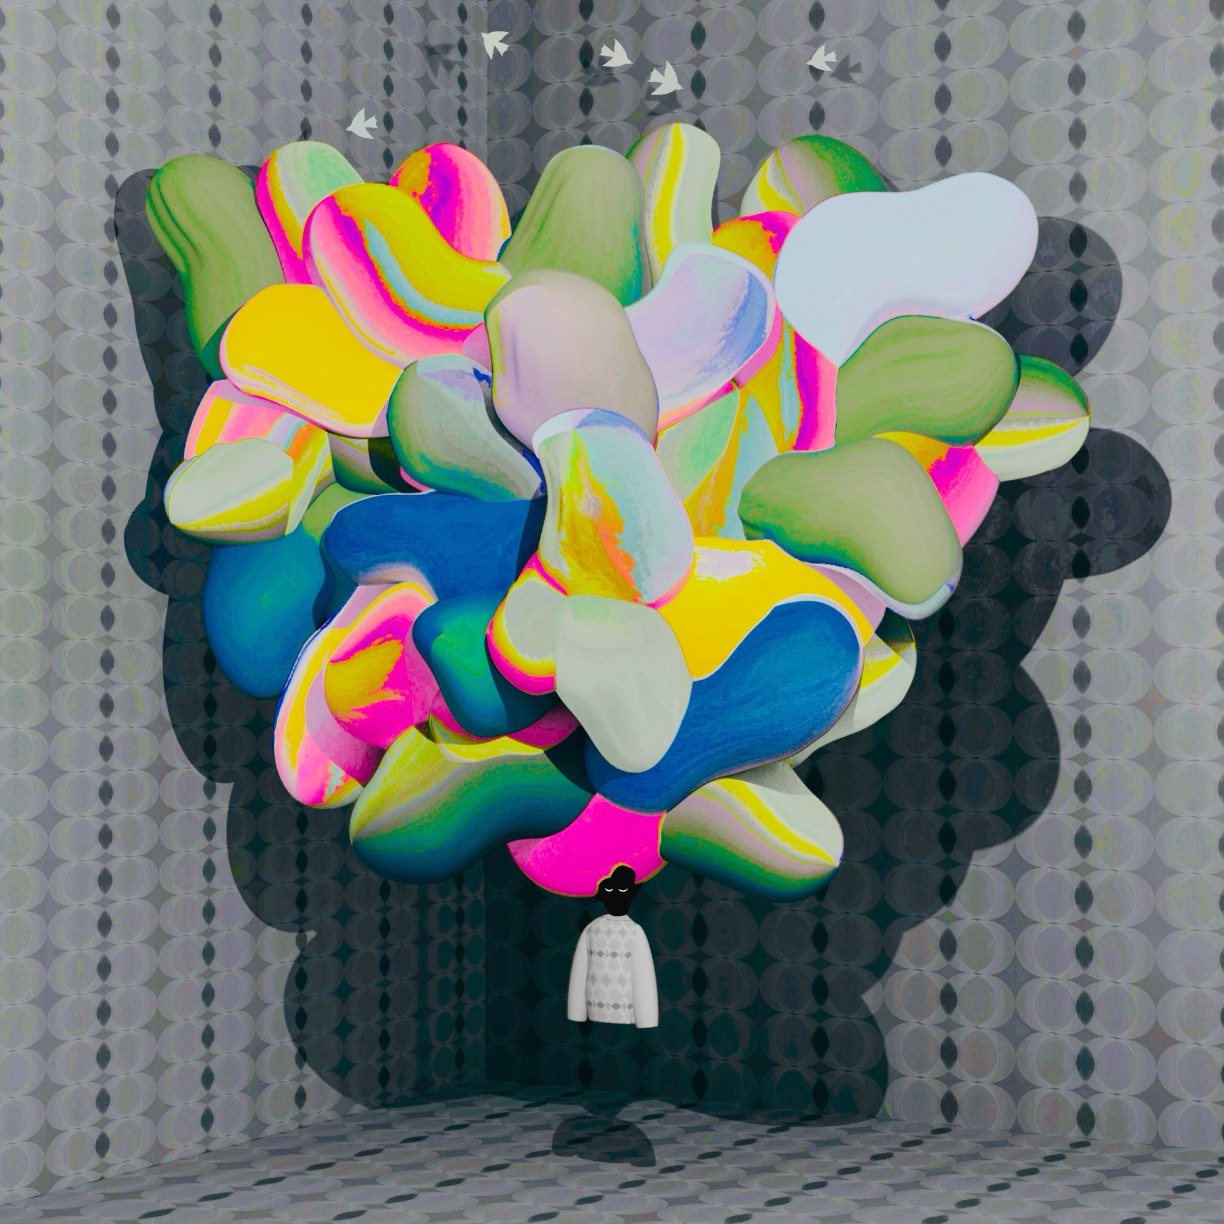 Atsushigraphのアートワーク Brain Remix のサムネイル画像です。